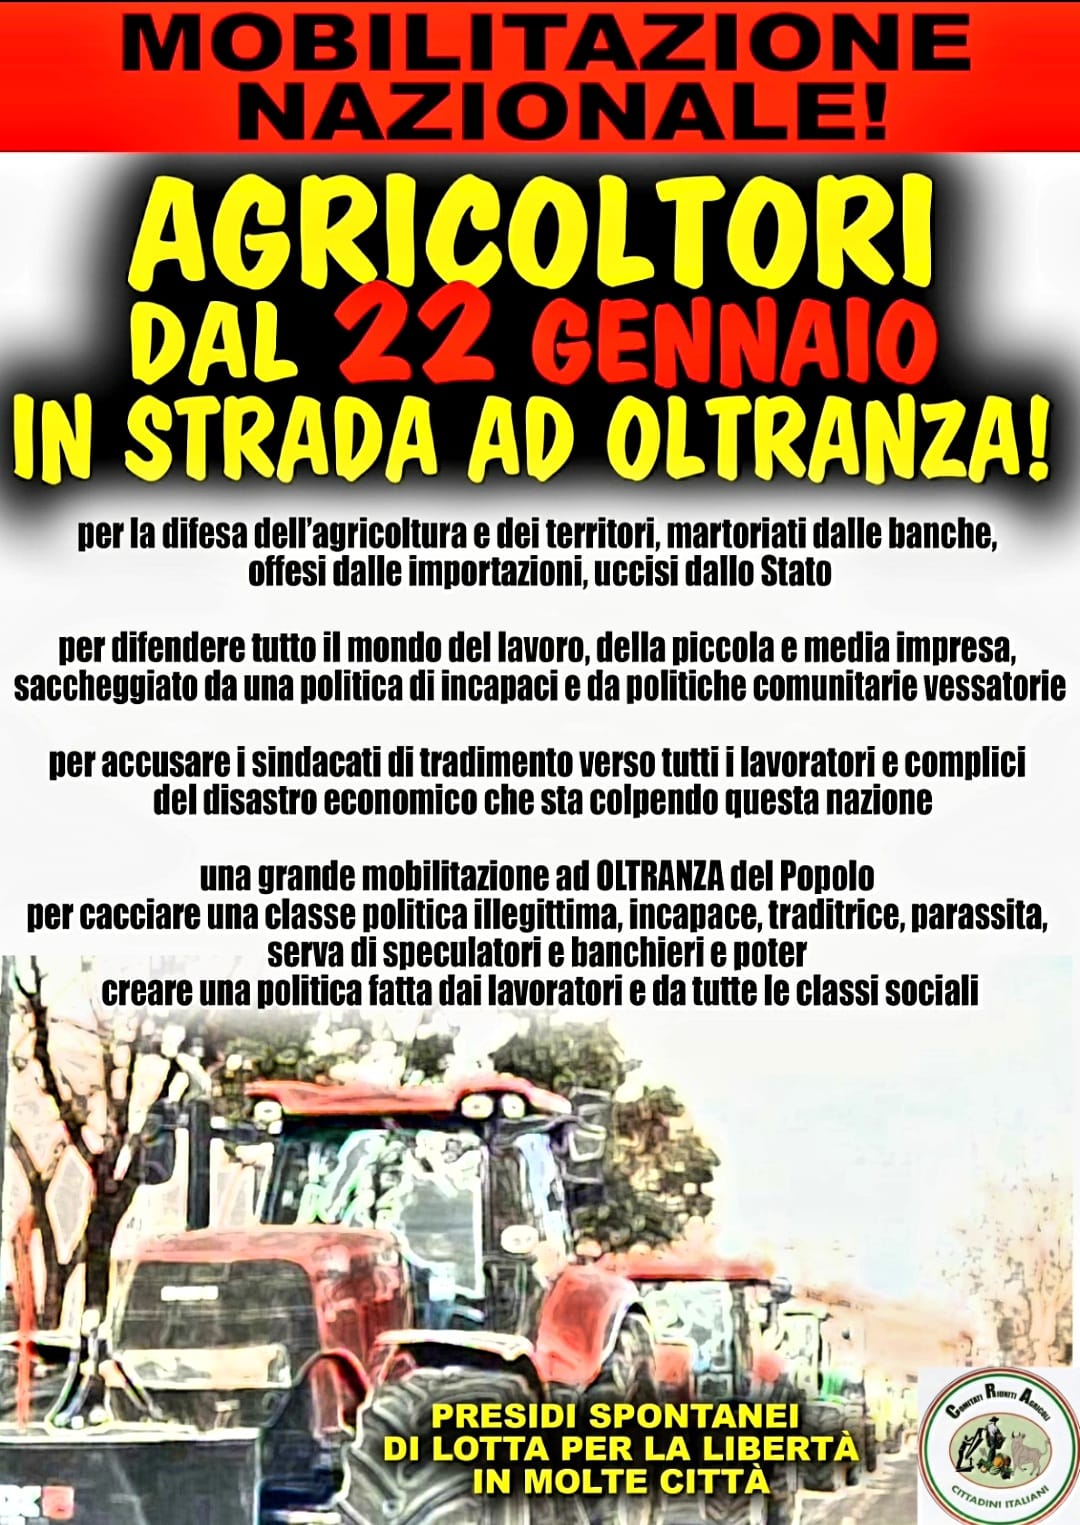 Il 22 gennaio parte la mobilitazione nazionale degli agricoltori italiani